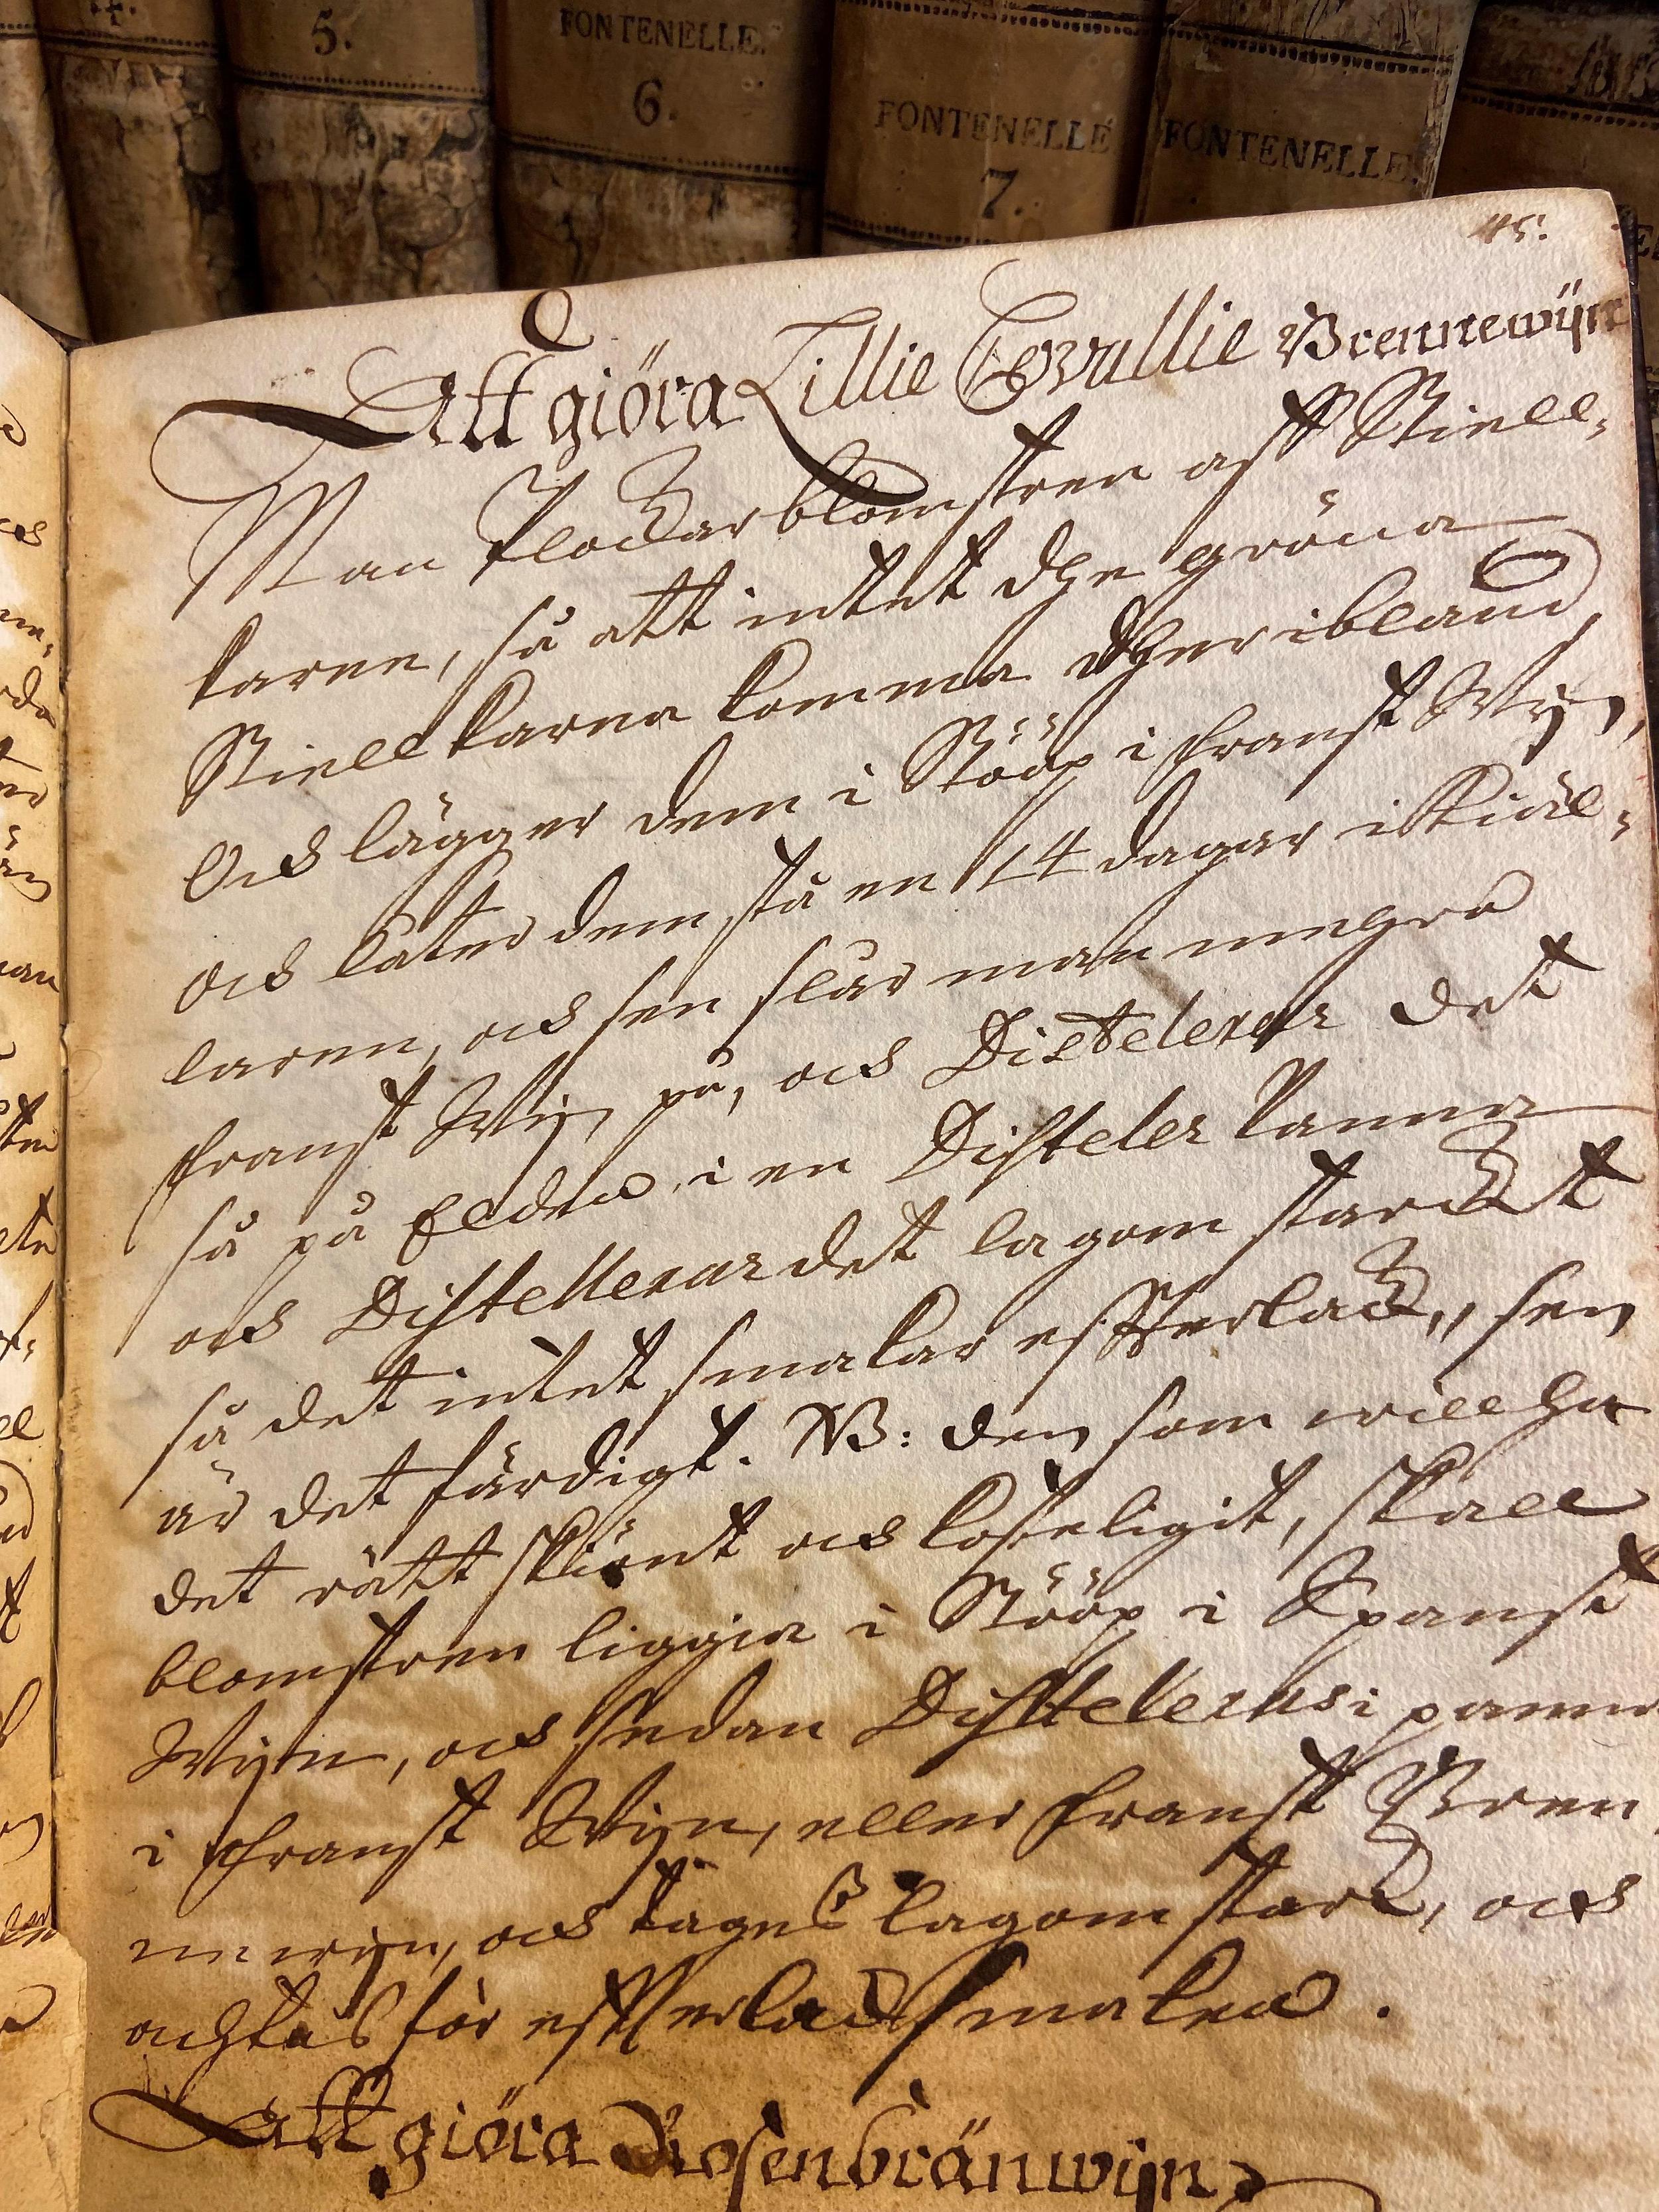 En sida i en handskriven kokbok som visar ett recept på liljekonvalj-brännvin.